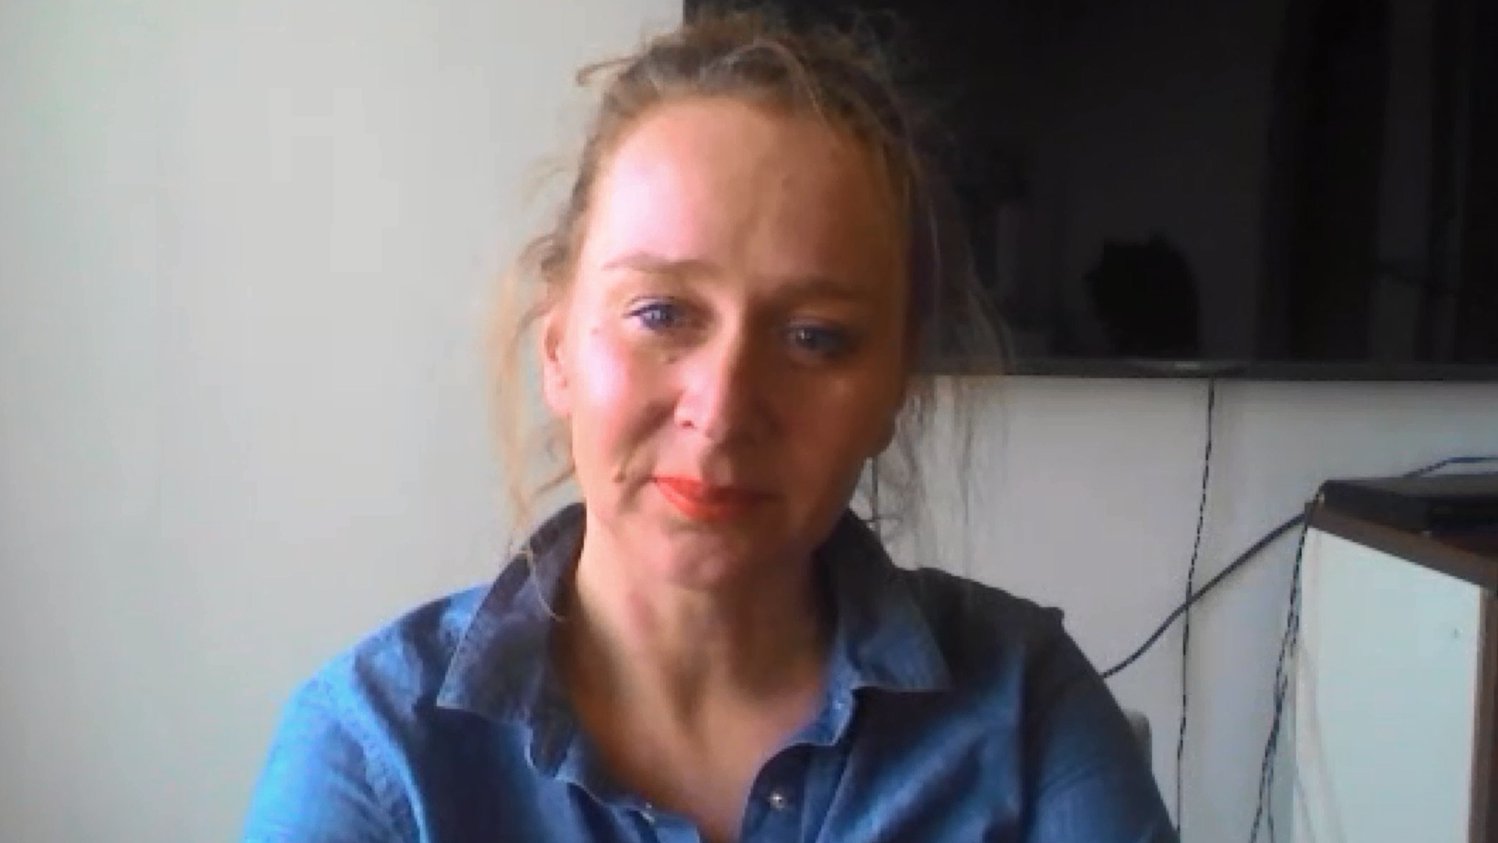 #FreeDeniz: taz-Journalistin Doris Akrap über den Fall Yücel